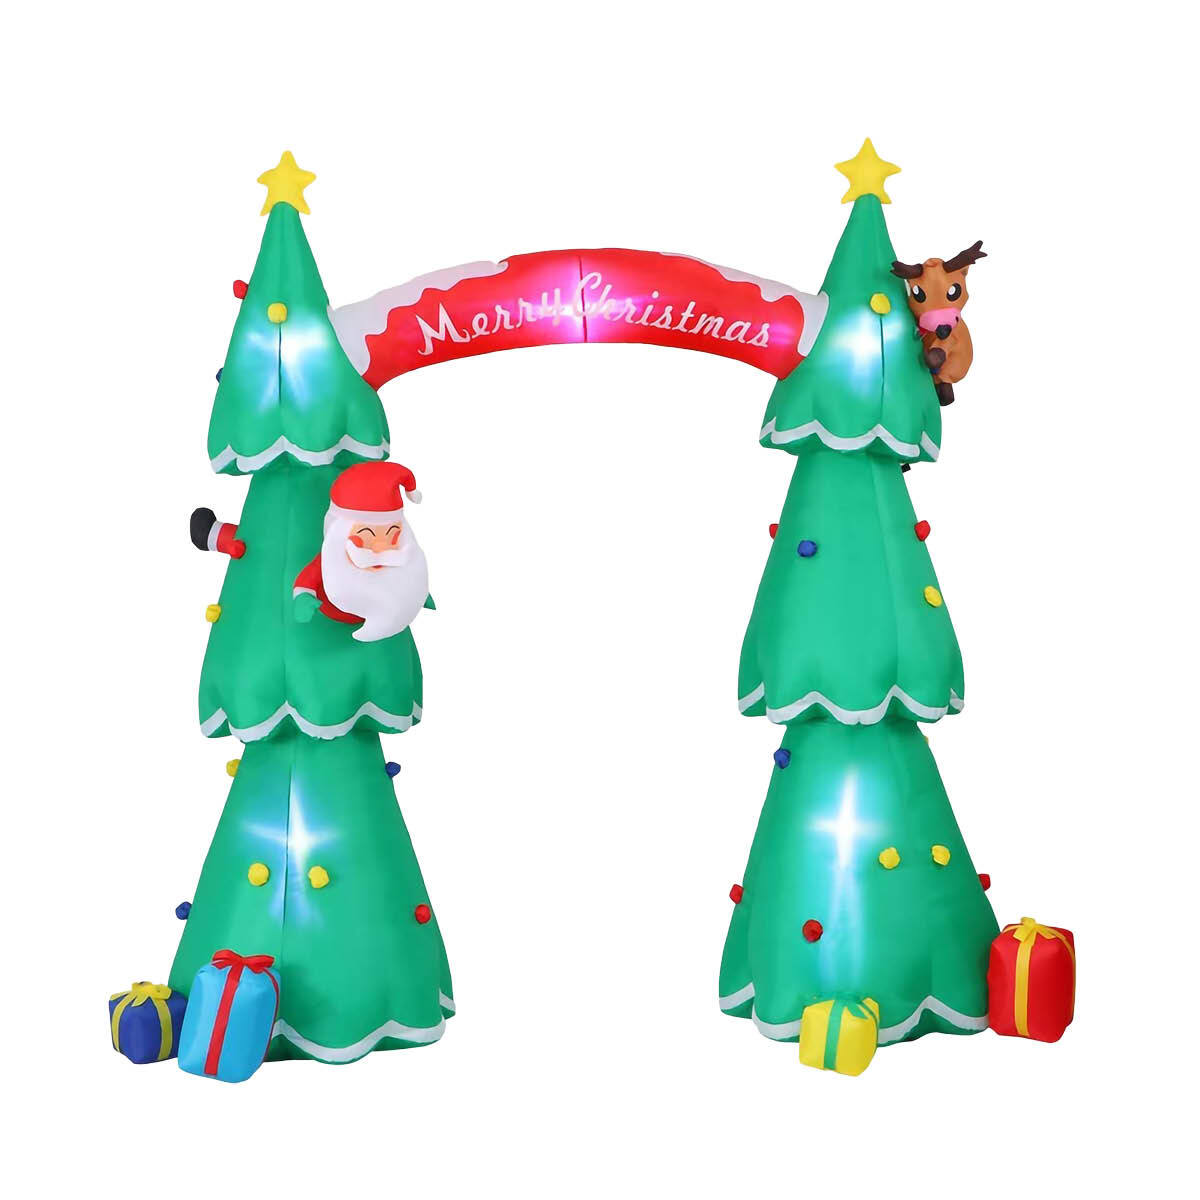 Christmas By Sas 3m x 2.4m Christmas Tree Arch Self Inflating LED Lights